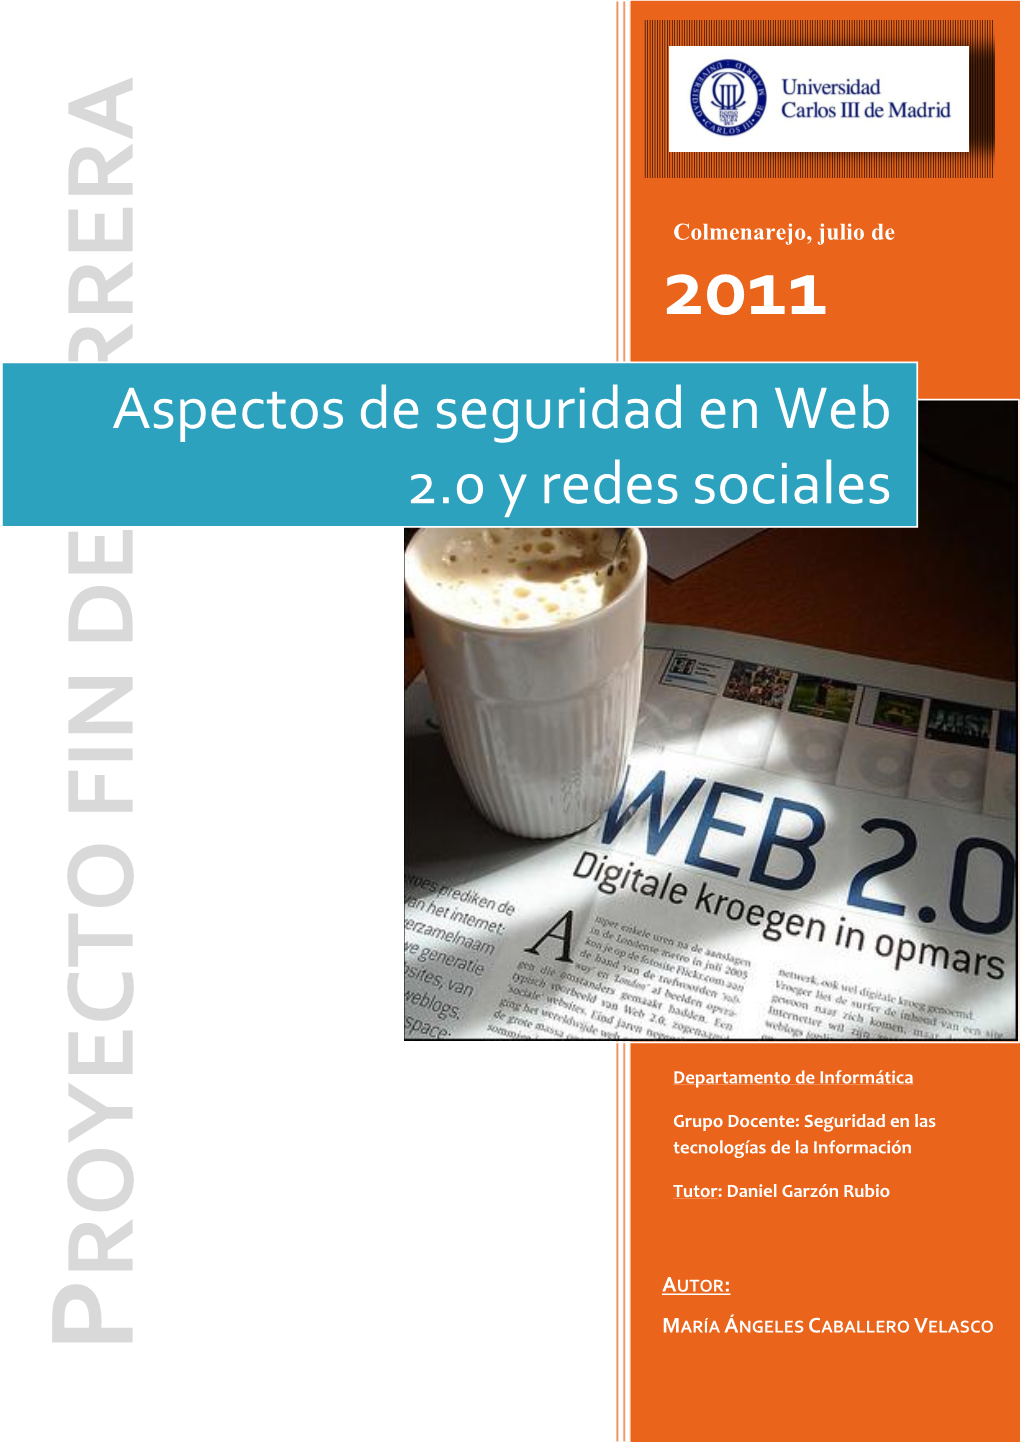 Aspectos De Seguridad En Web 2.0 Y Redes Sociales 2011